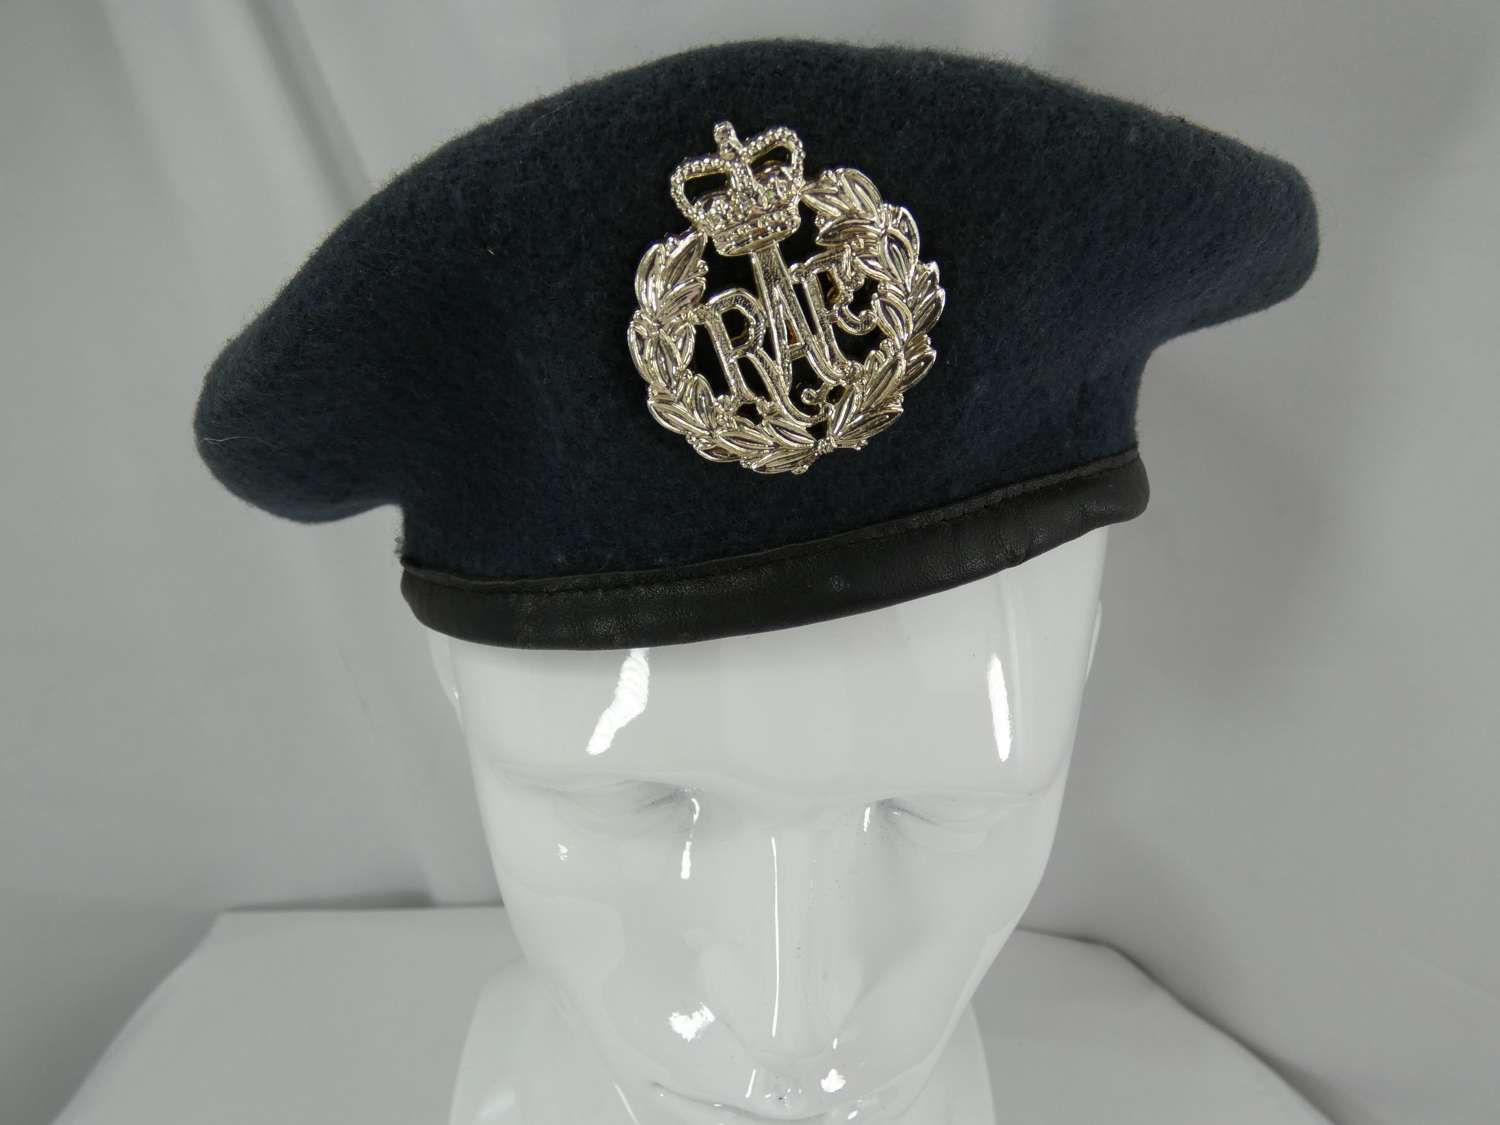 Post War British beret